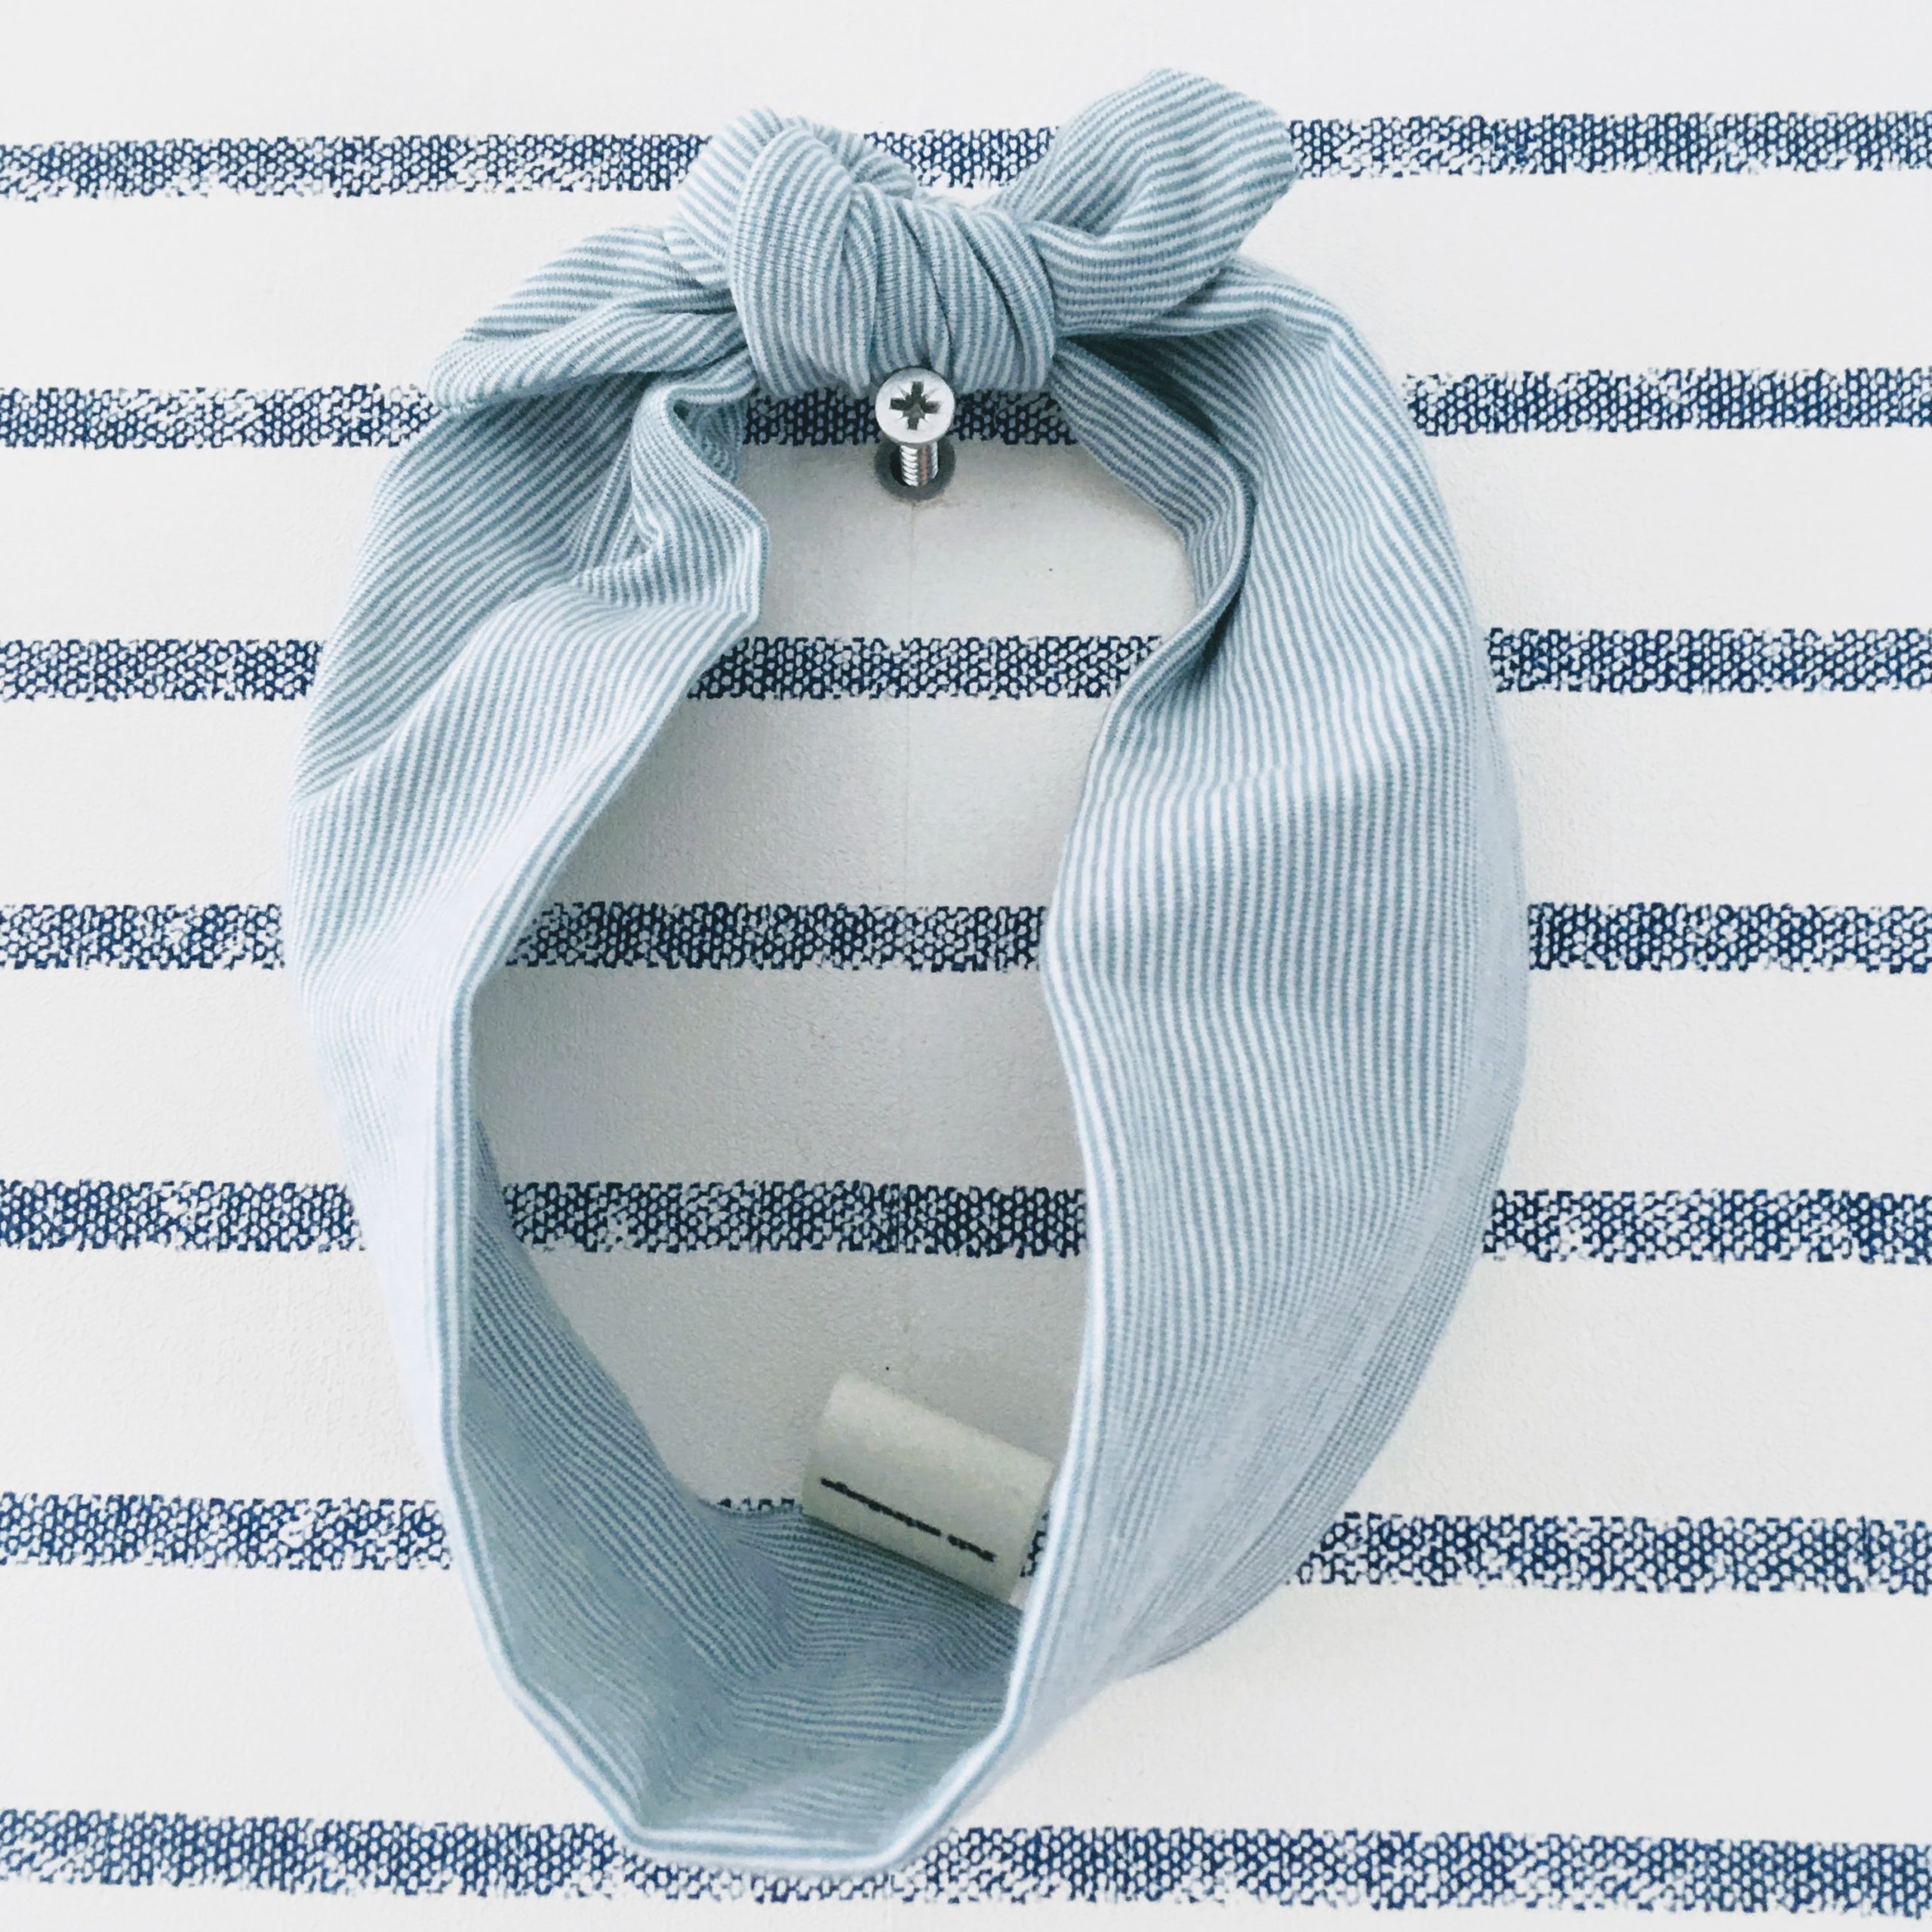 du vent dans mes valises - bandeau extensible enfant adulte jersey rayé coton blanc rayures bleues made in France